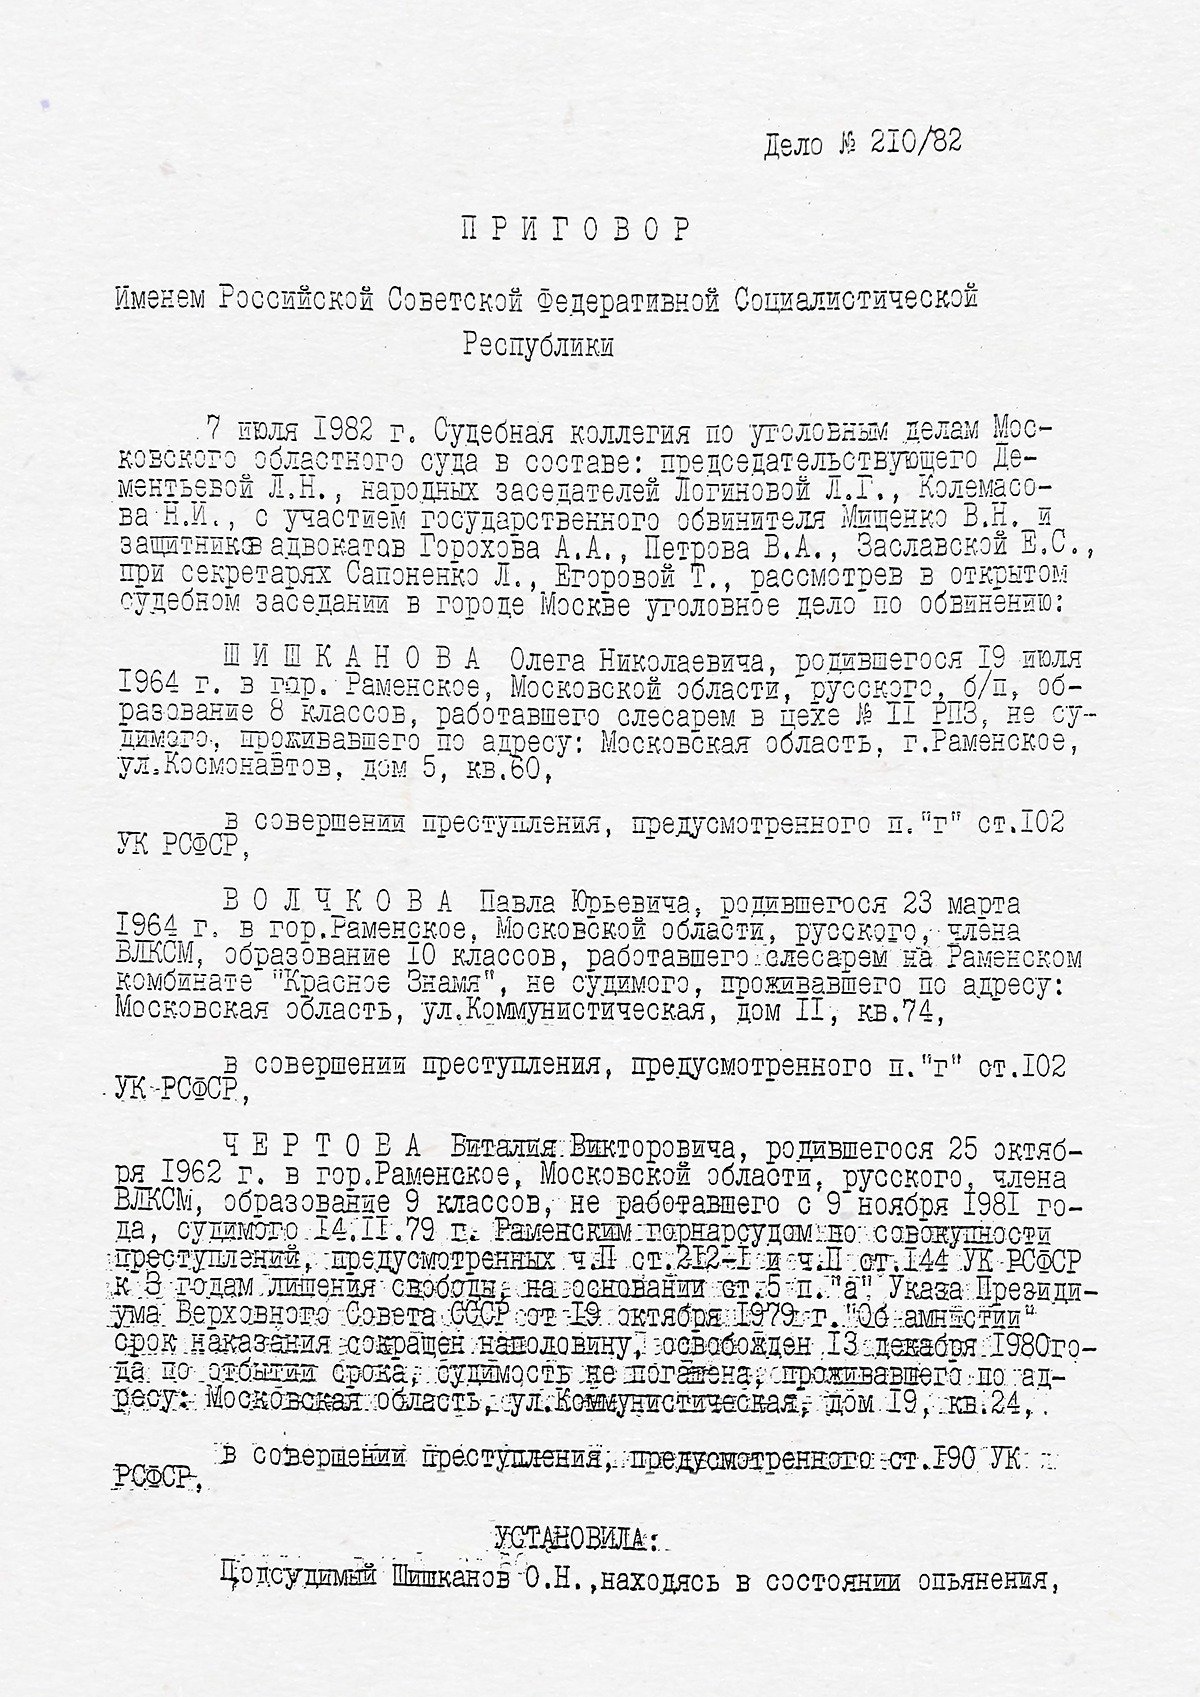 Скан приговора, вынесенного 7 июля 1982 года Мособлсудом. Полностью копия приговора доступна по ссылке